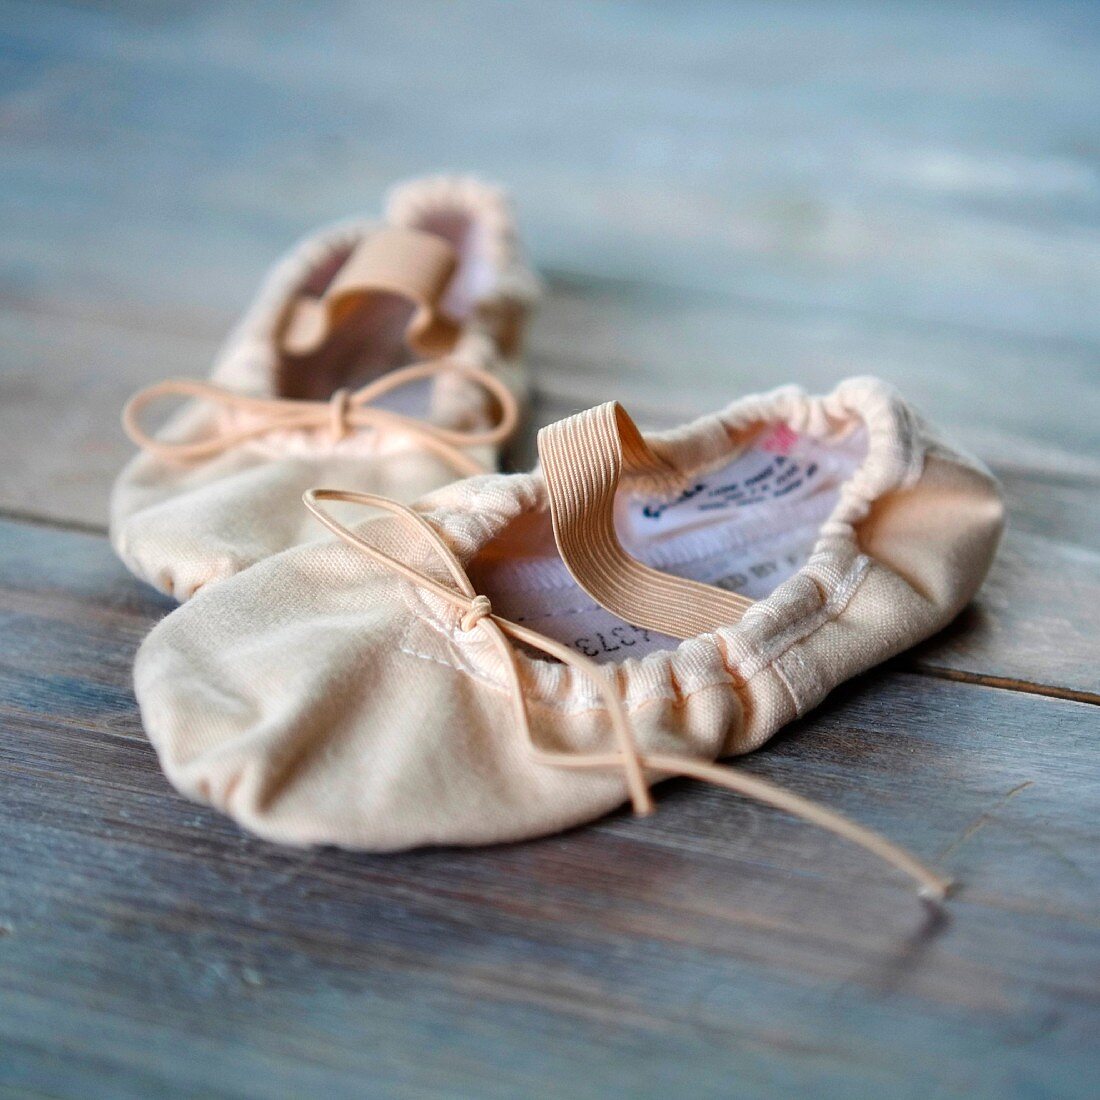 Ballet shoes on wooden floor